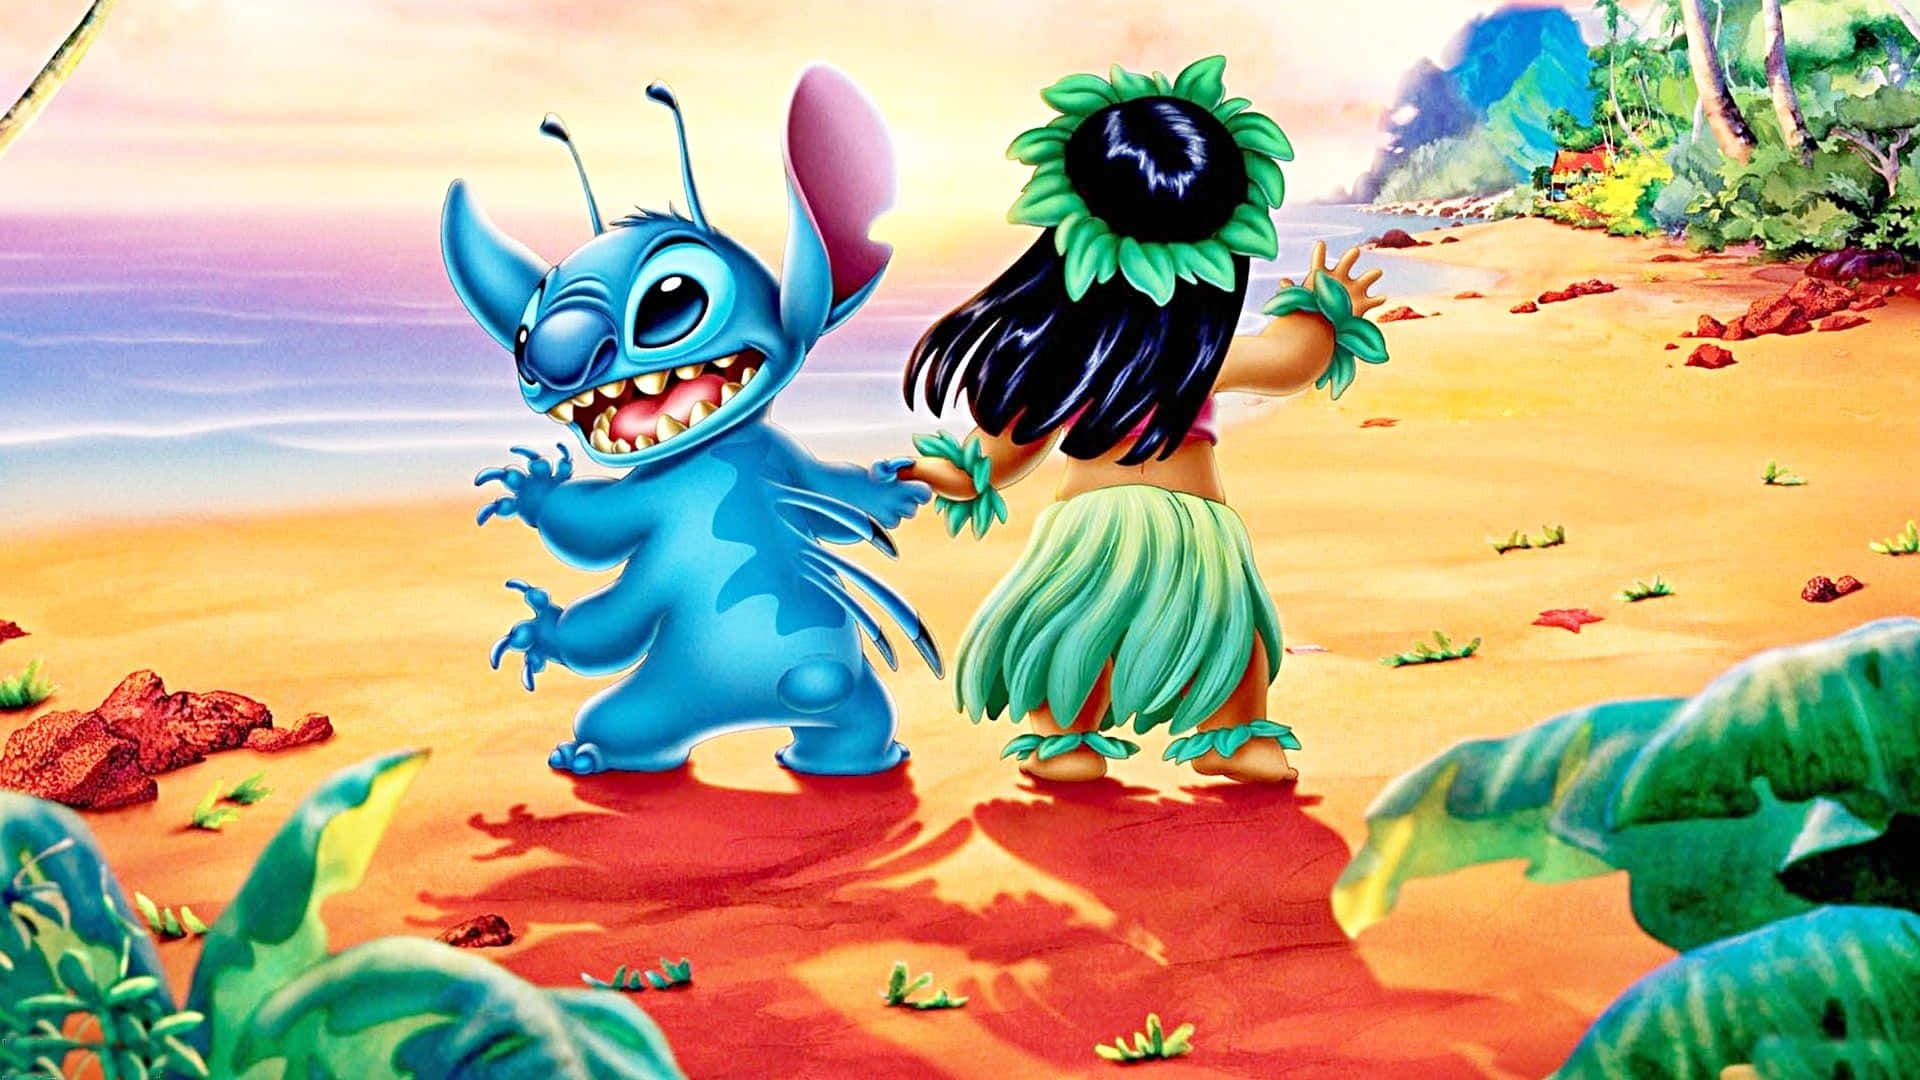 Paintingde Fanart De Disney En La Computadora De Lilo Y Stitch. Fondo de pantalla